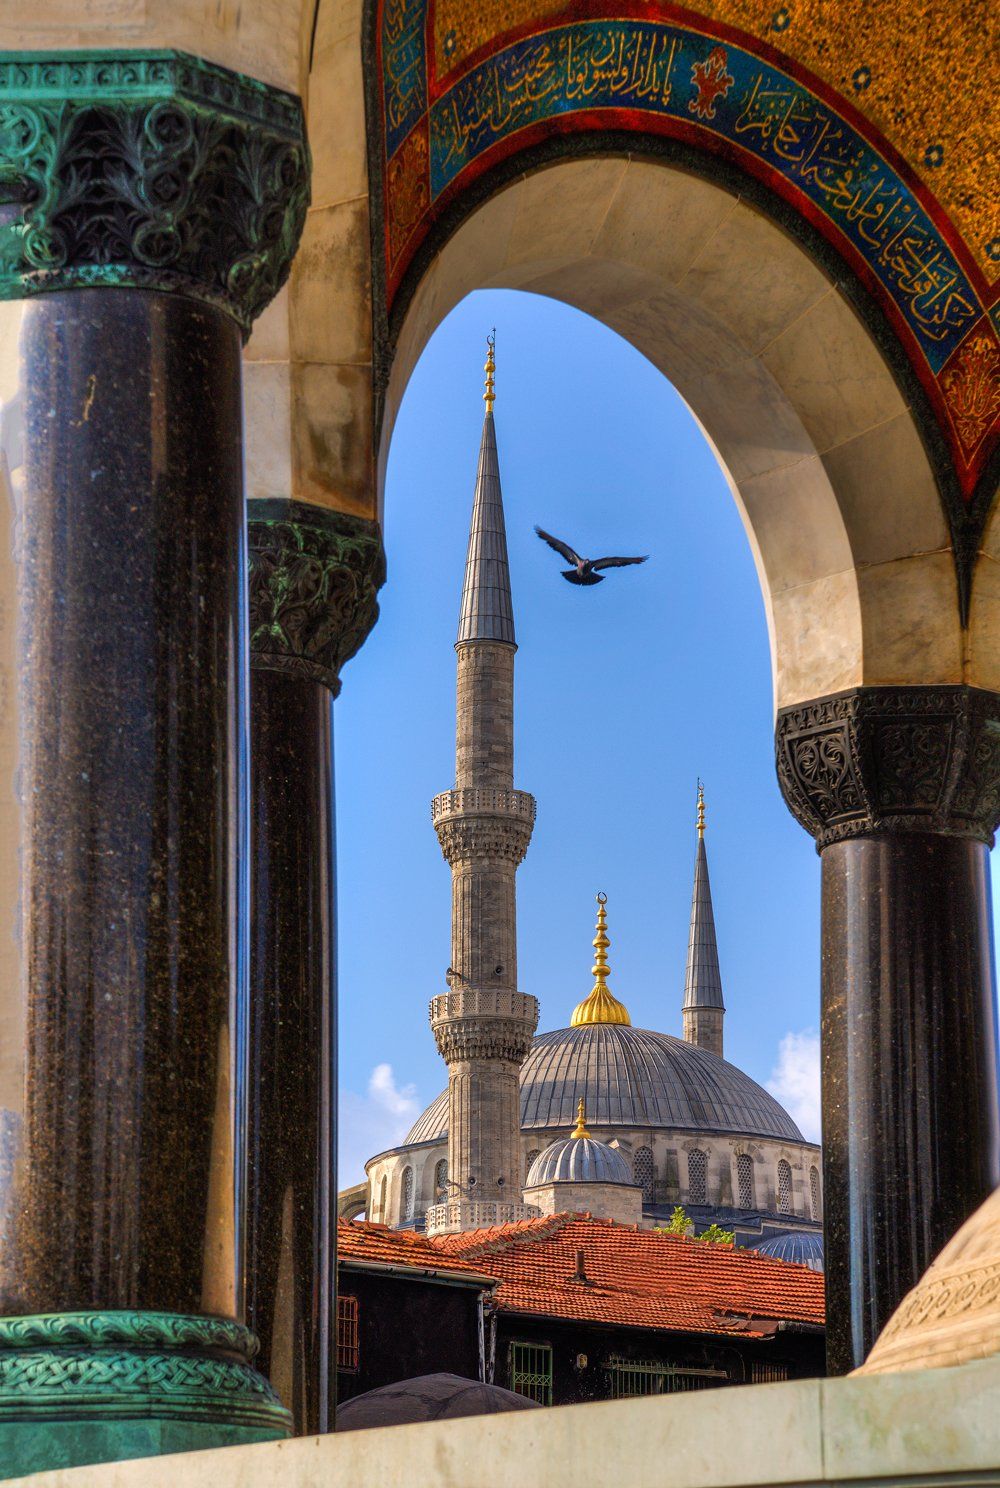 Стамбул, Турция, Немецкий фонтан, Голубая мечеть, птица, минарет, Денис Свечников